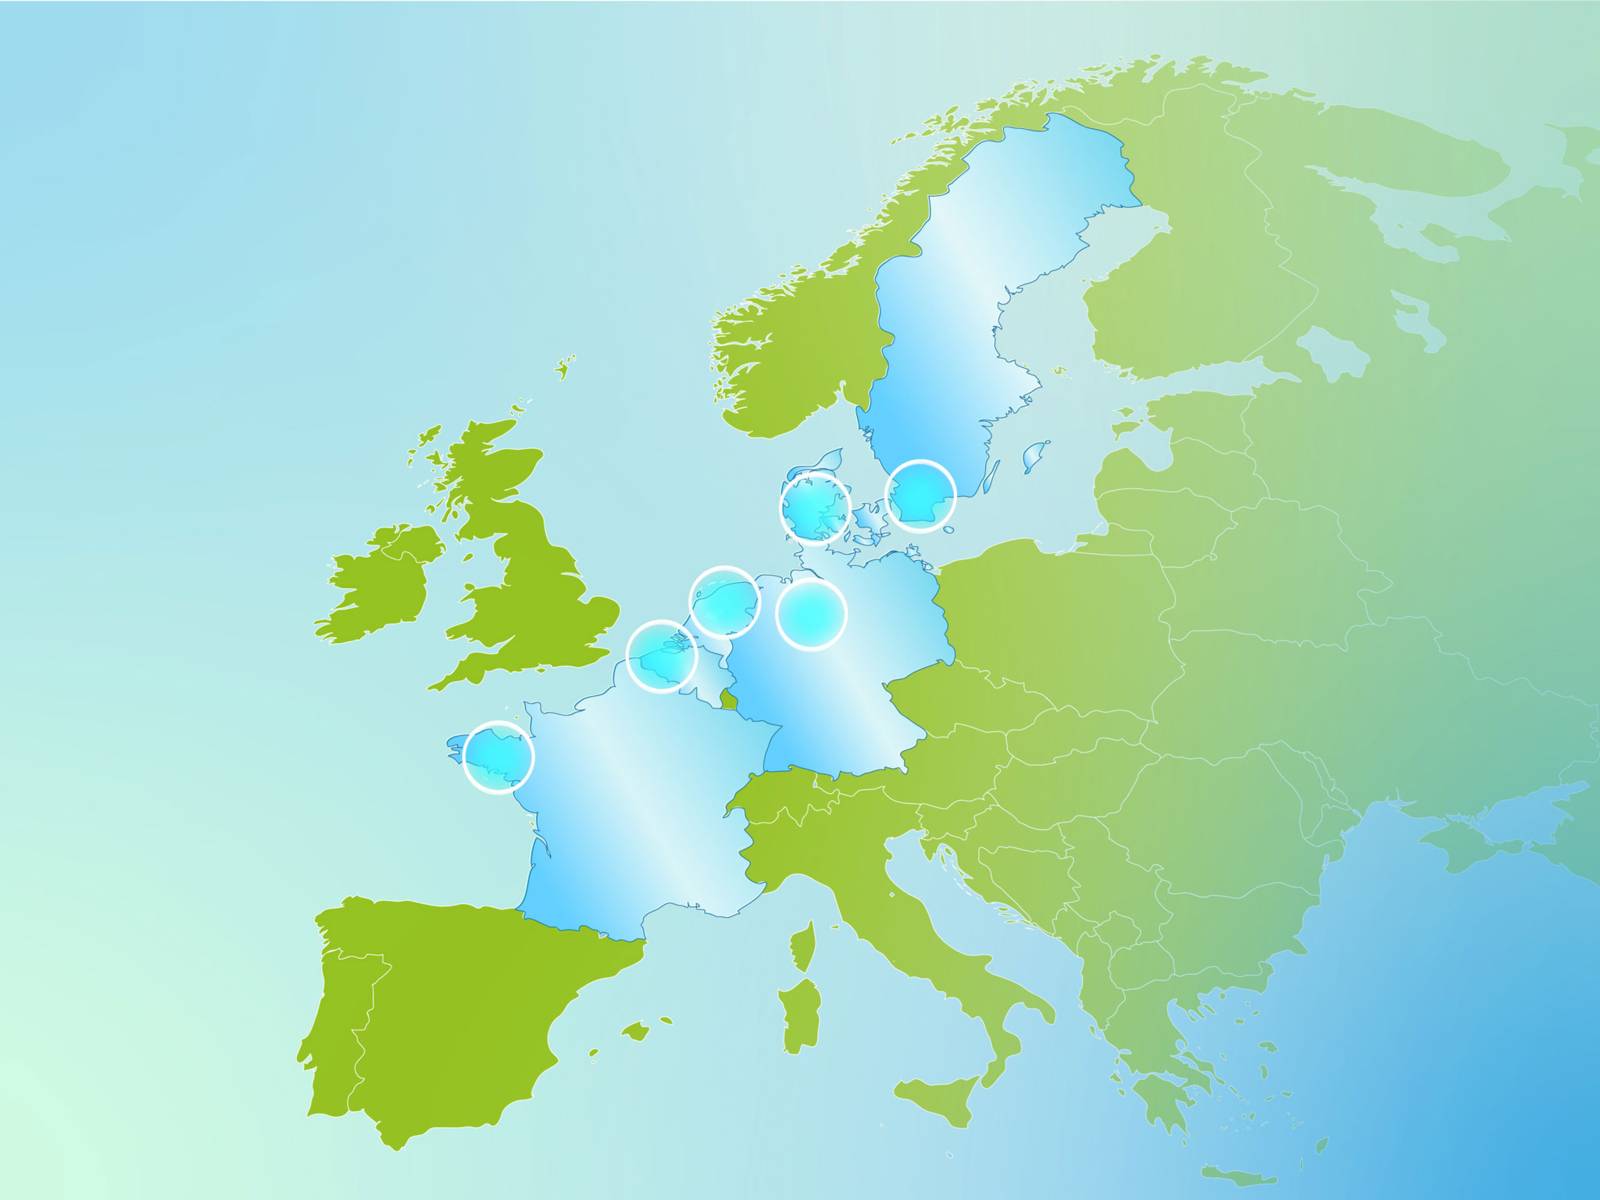 Politische Europakarte mit einzelnen Ländern farblich abgesetzt.